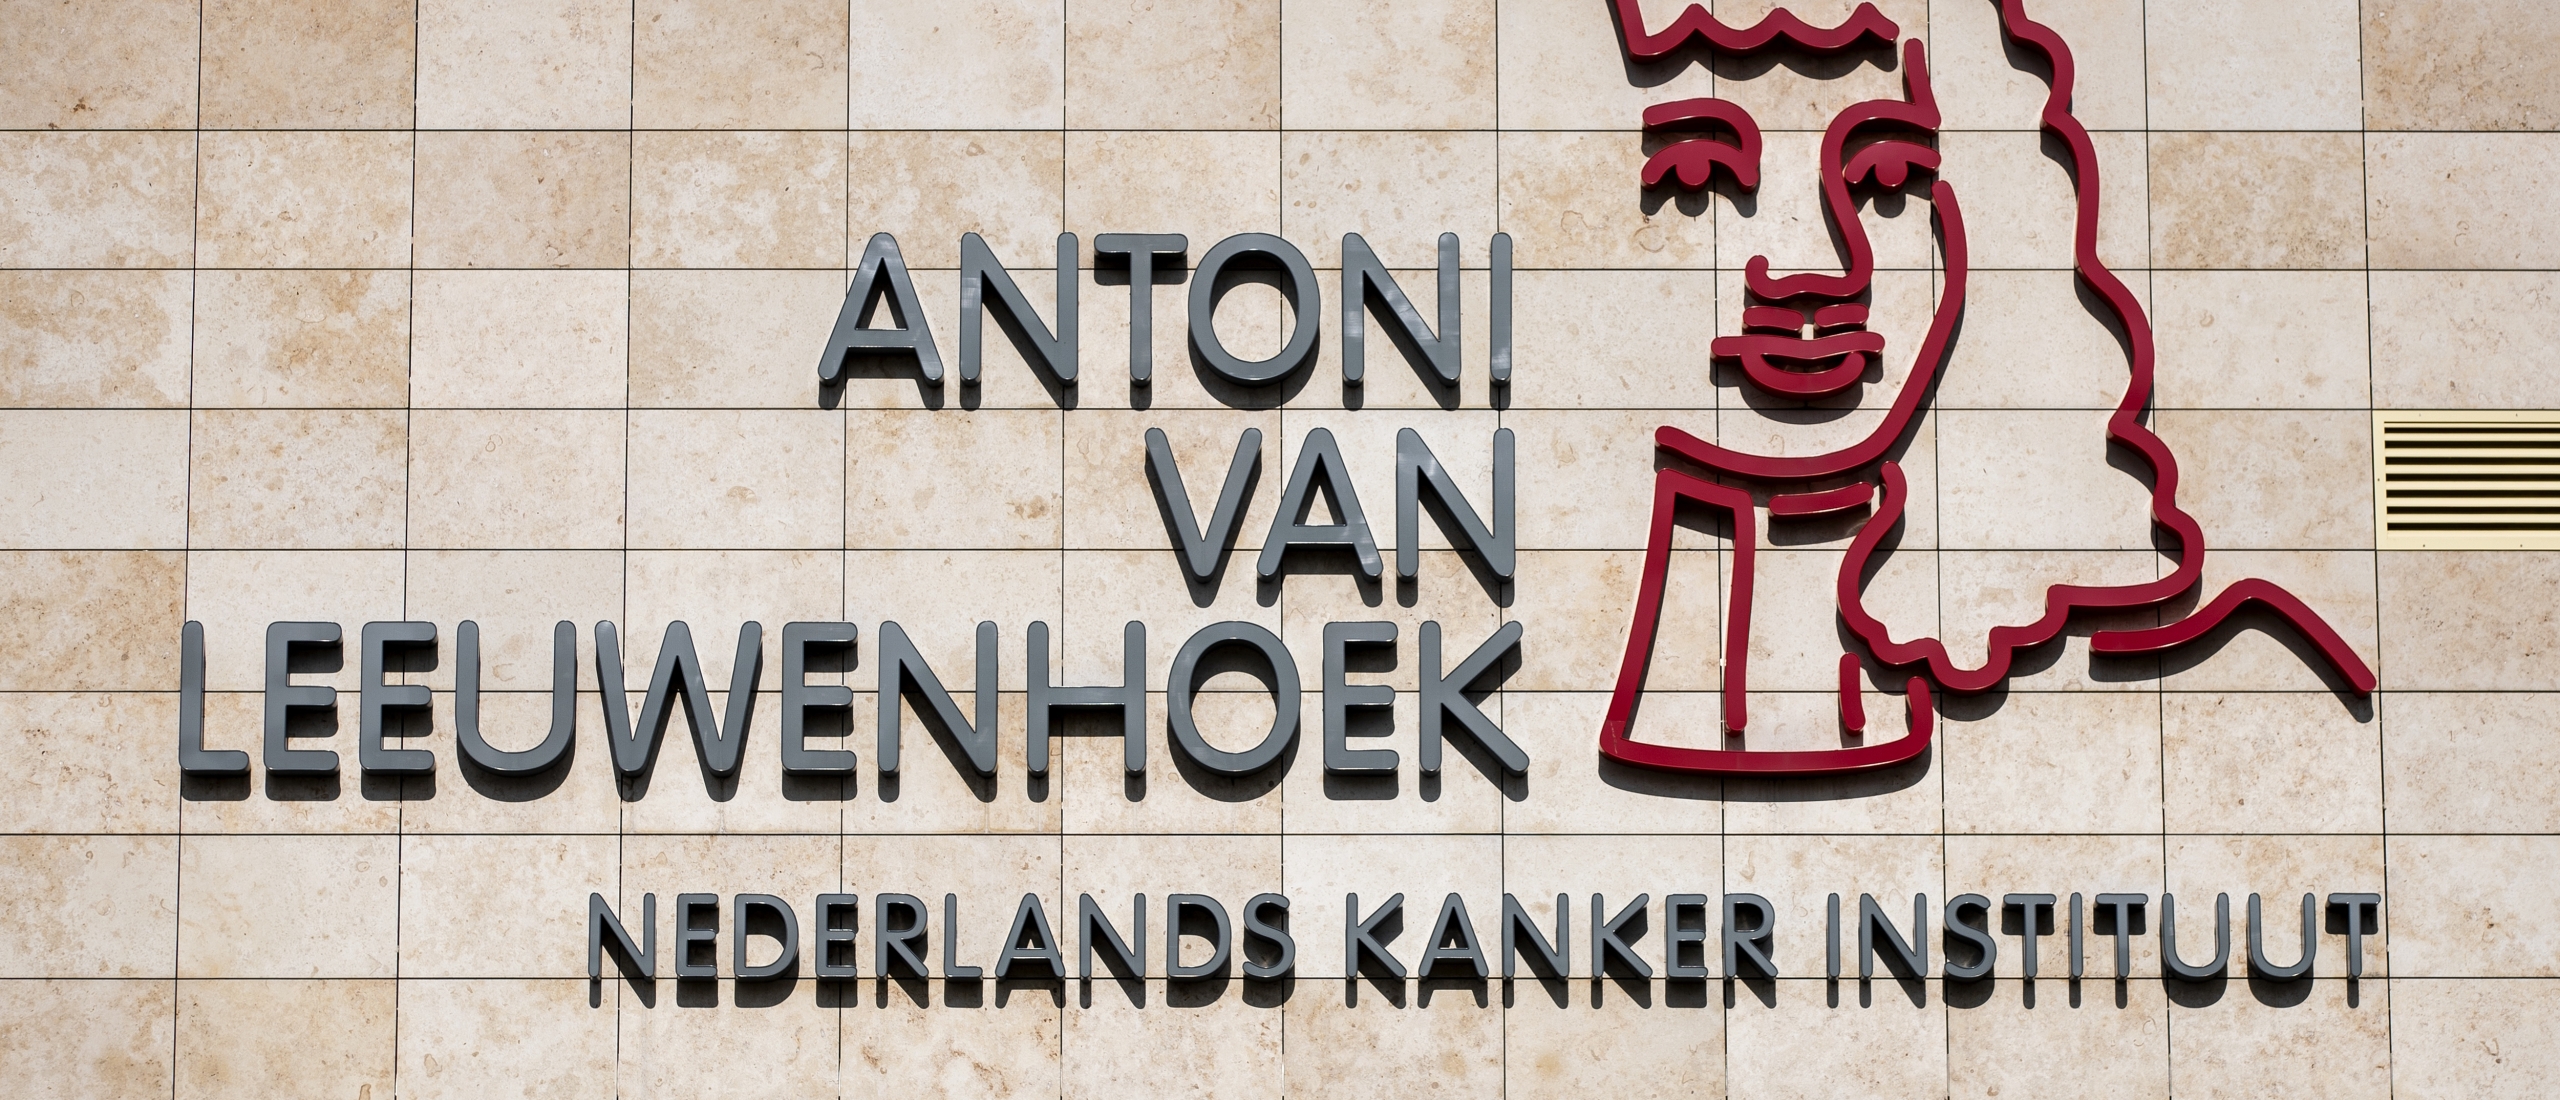 Antoni van Leeuwenhoek: doorbraak in onderzoek blaaskanker